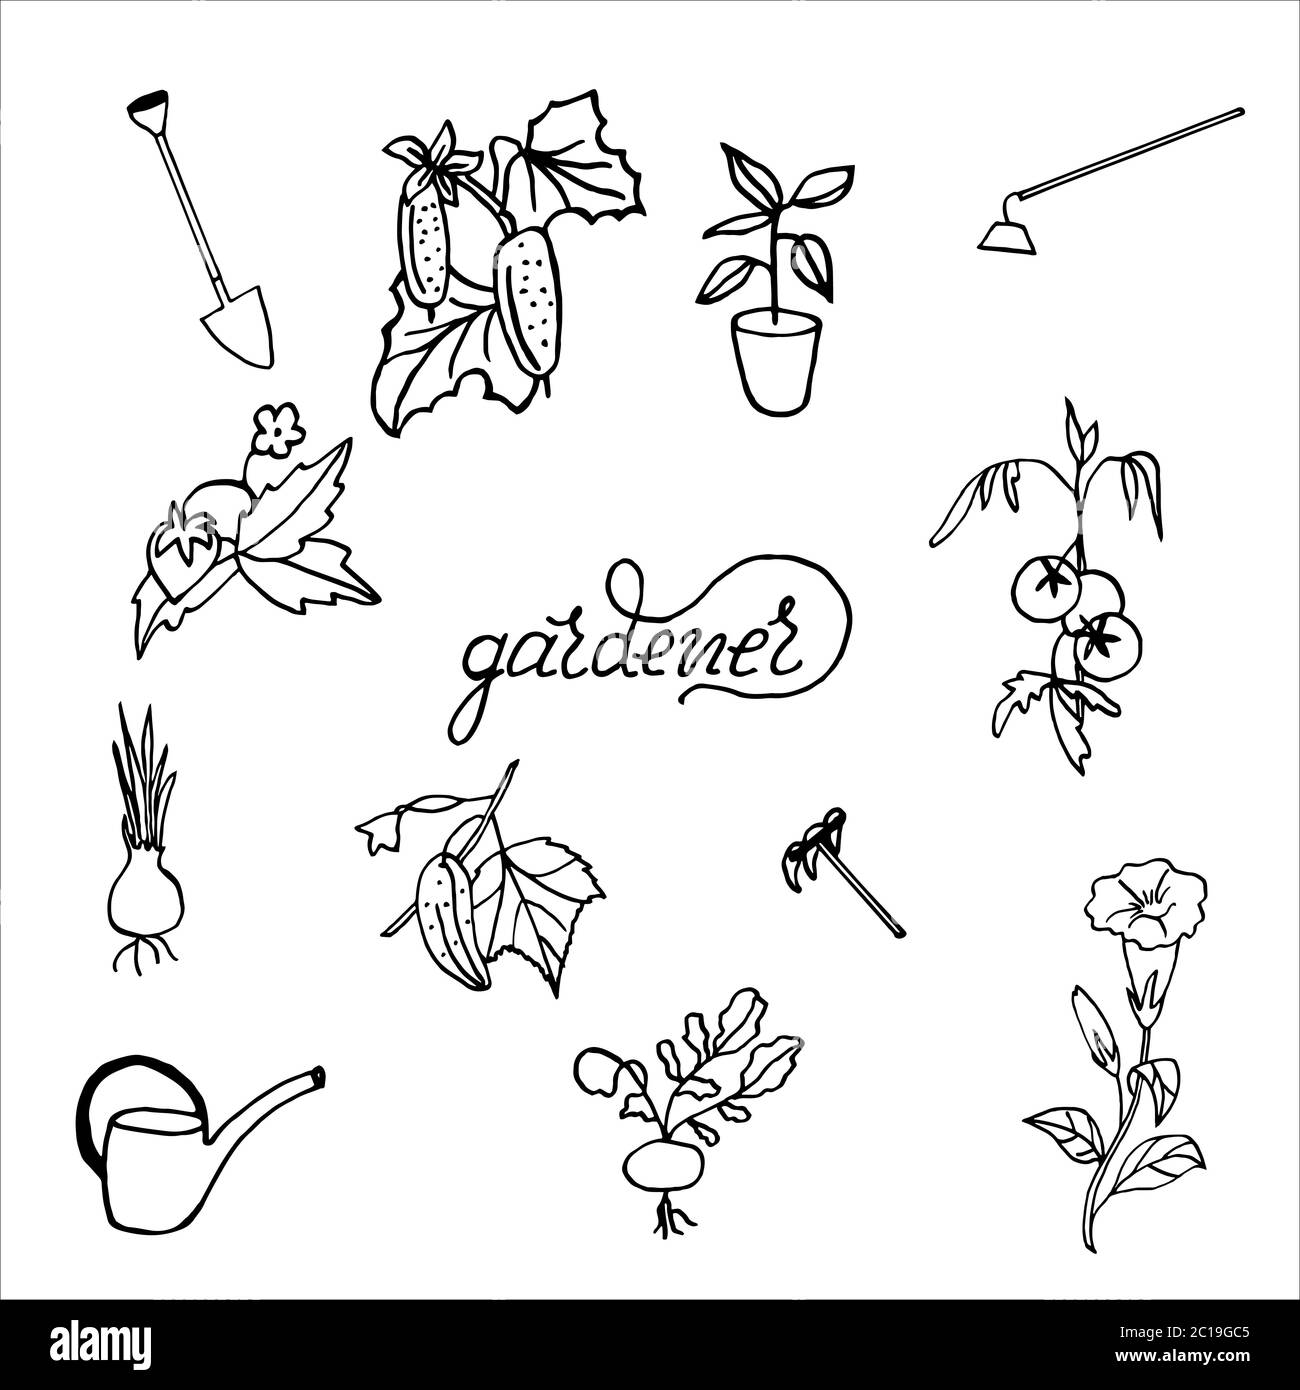 Isoliert auf weißem Hintergrund gesetzt Gärtner - Petunia, Tomaten, Gurken, Zwiebeln, Erdbeeren, Handzeichnung, Doodle, Vektor Stock Vektor